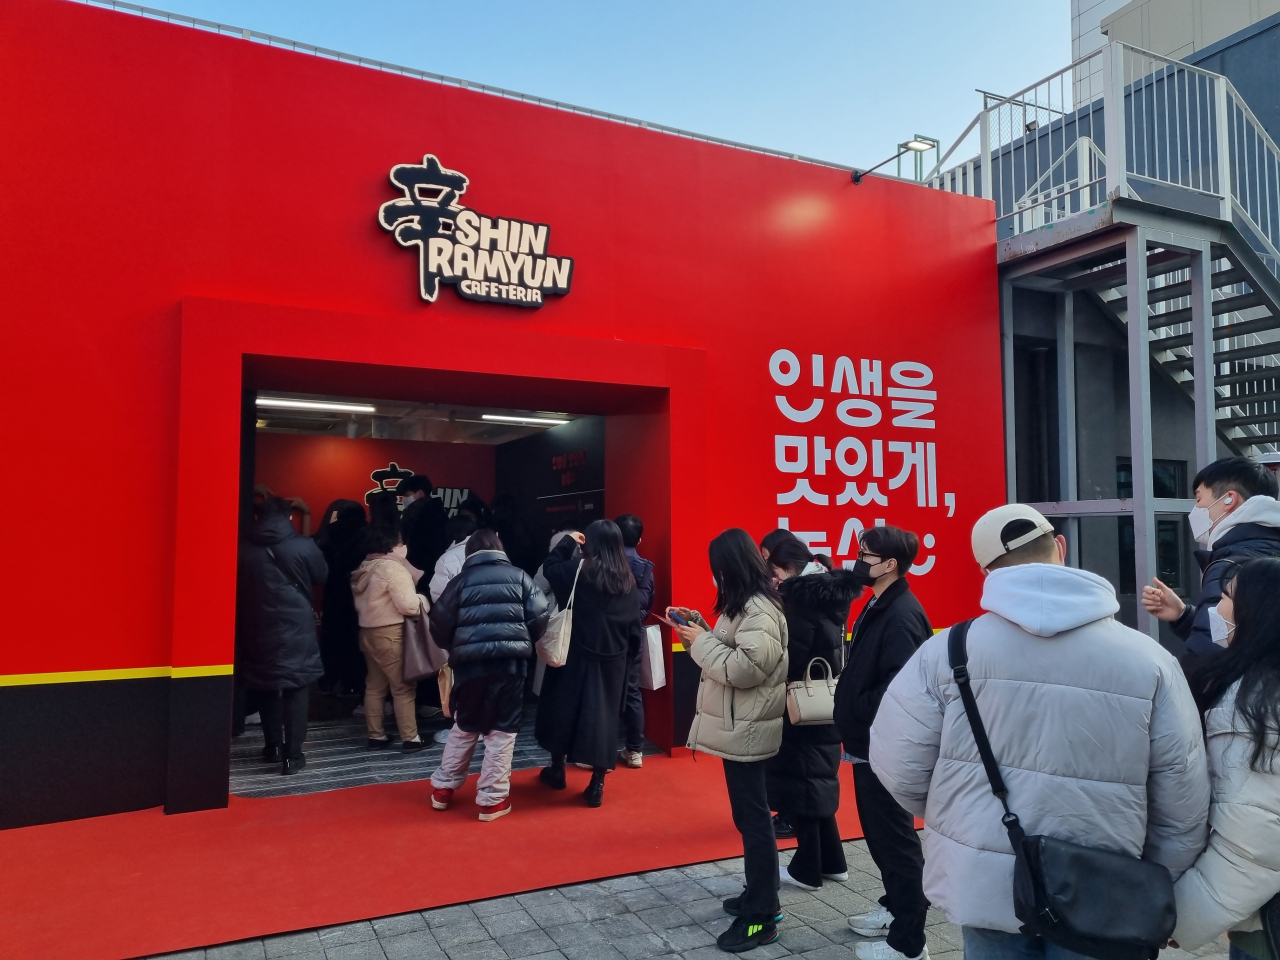 The Shin Ramyun Cafeteria pop-up store in Seongsu-dong, Seoul. (Nongshim)